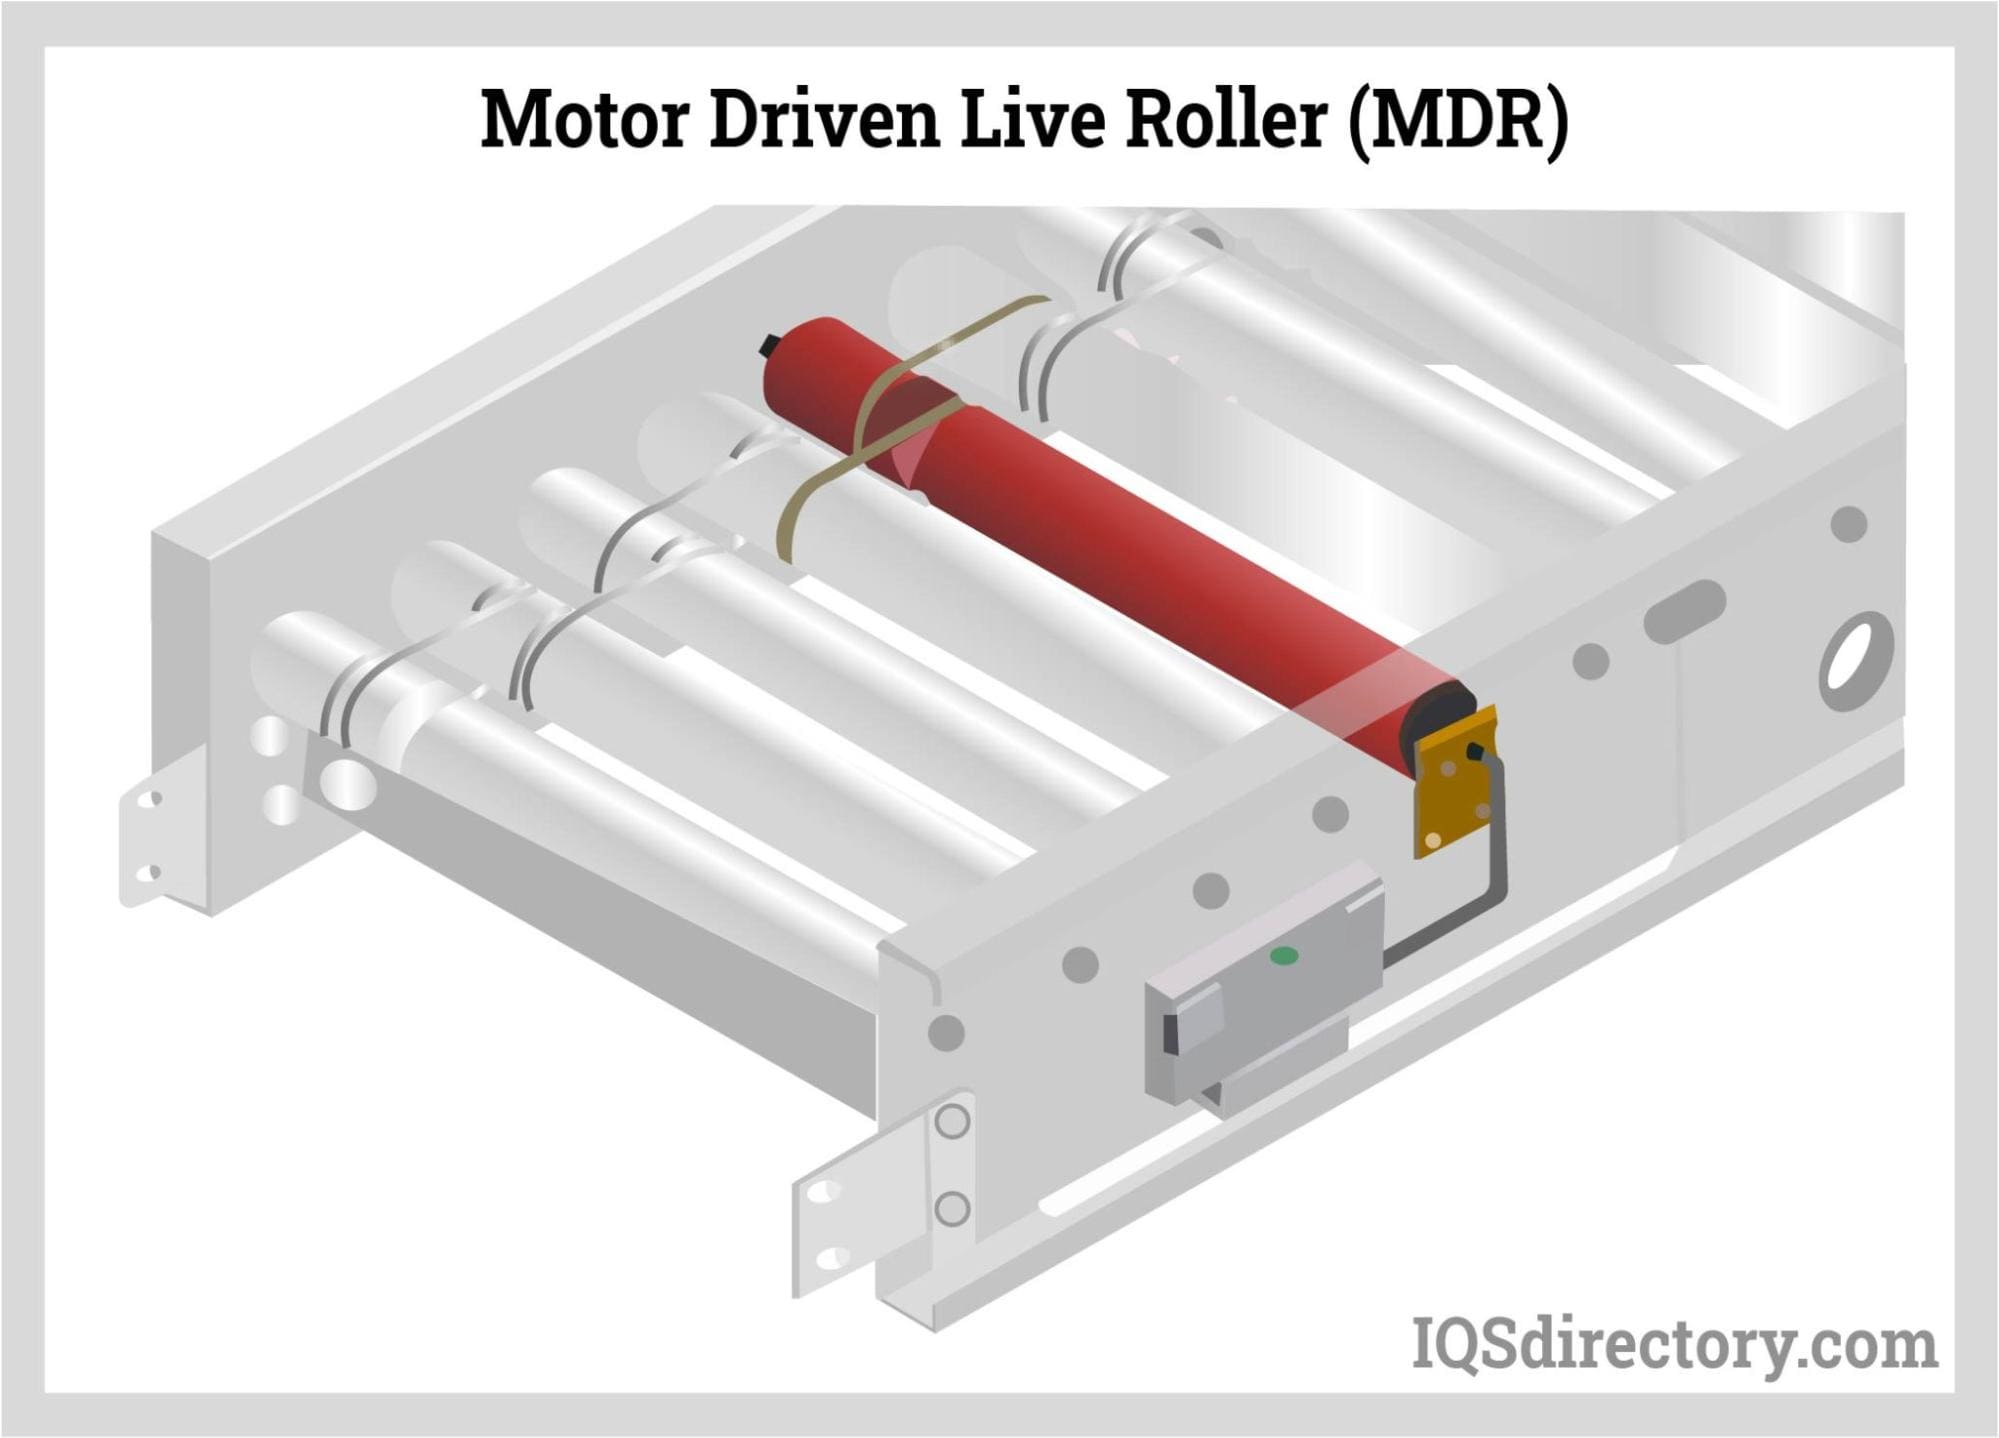 Motor Driven Live Roller (MDR)